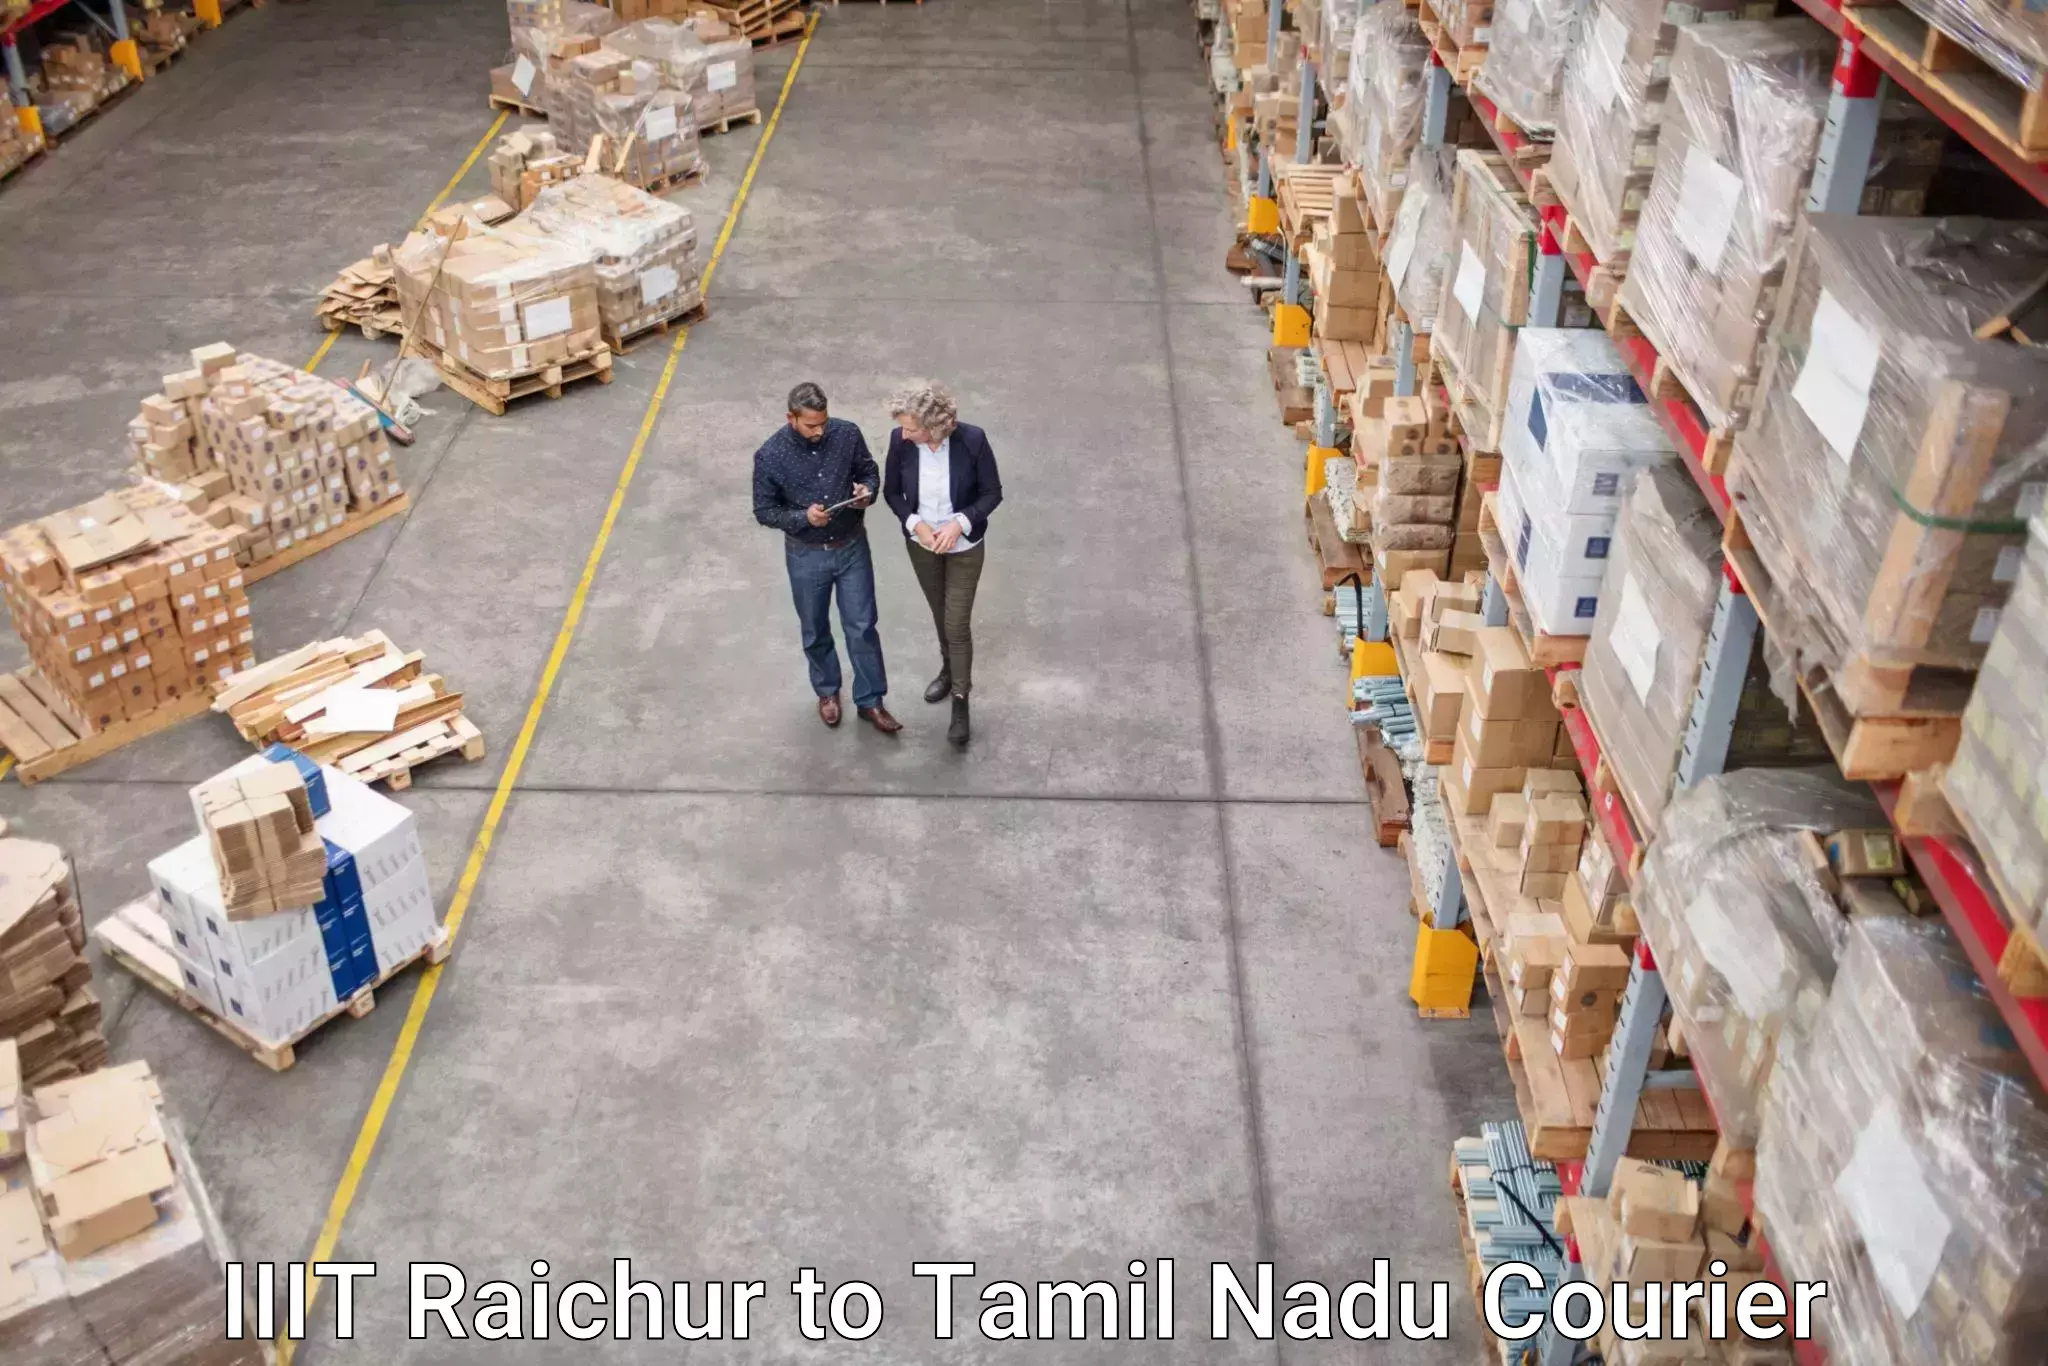 Courier tracking online IIIT Raichur to Tamil Nadu